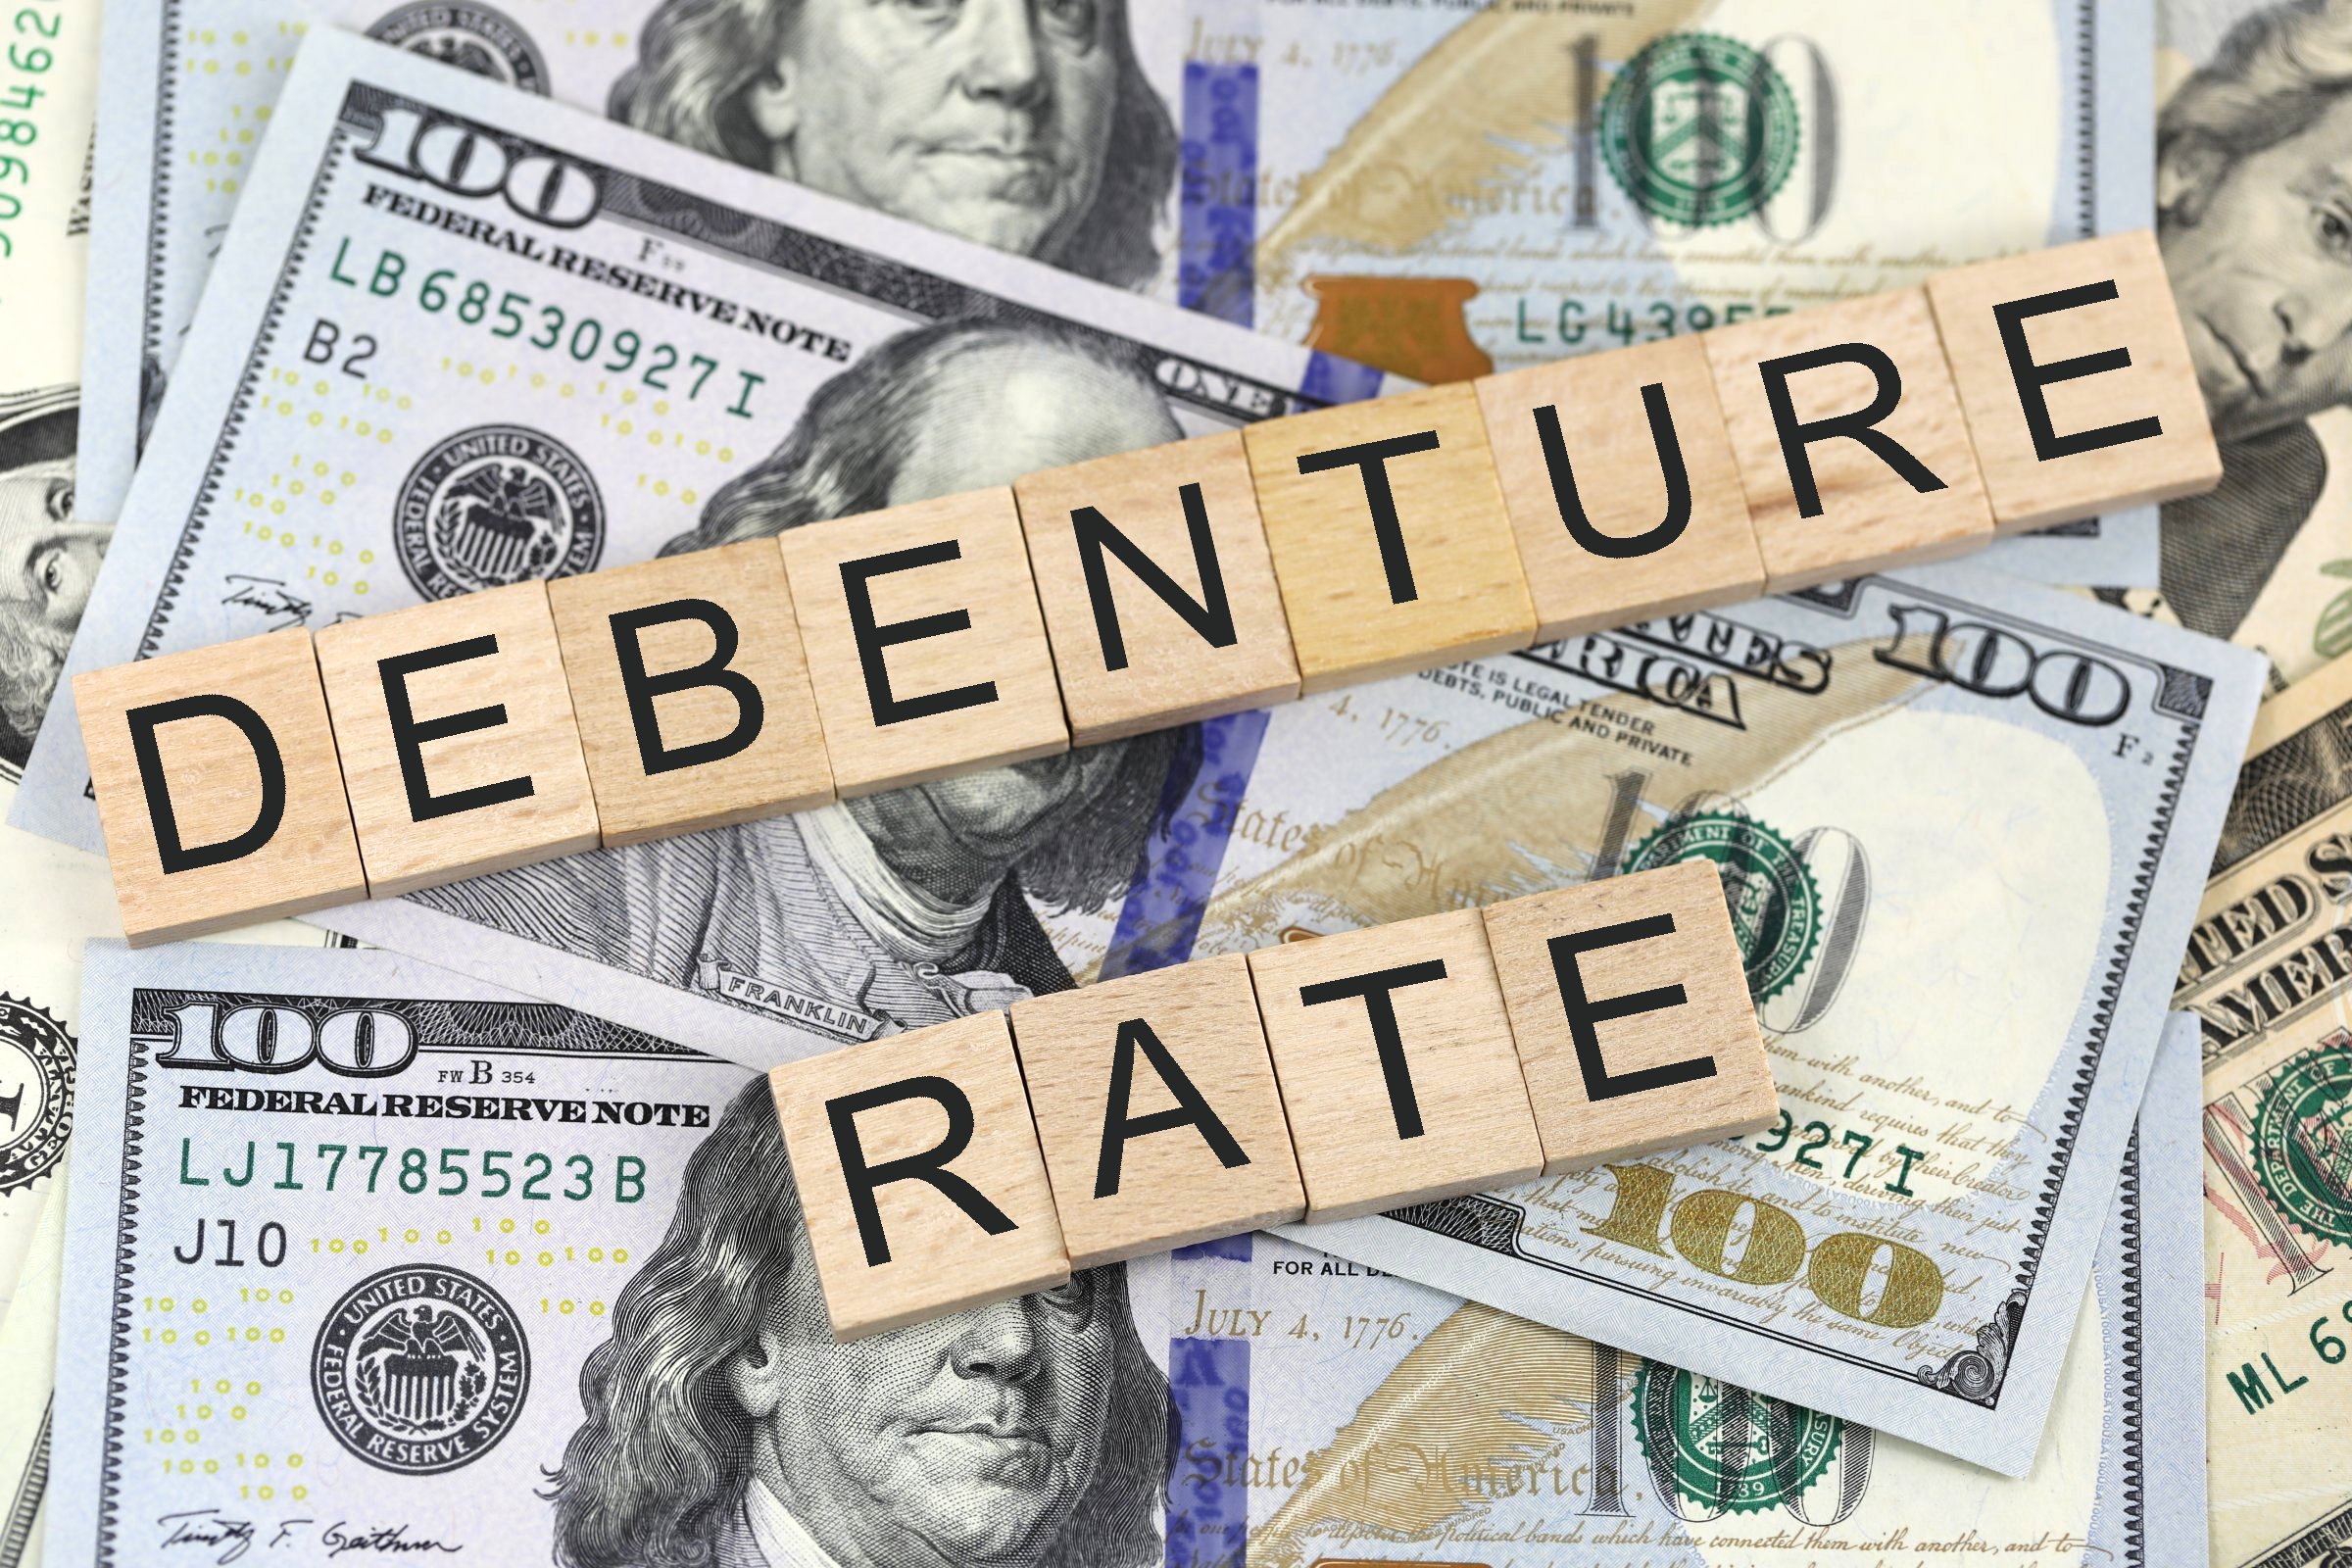 debenture rate